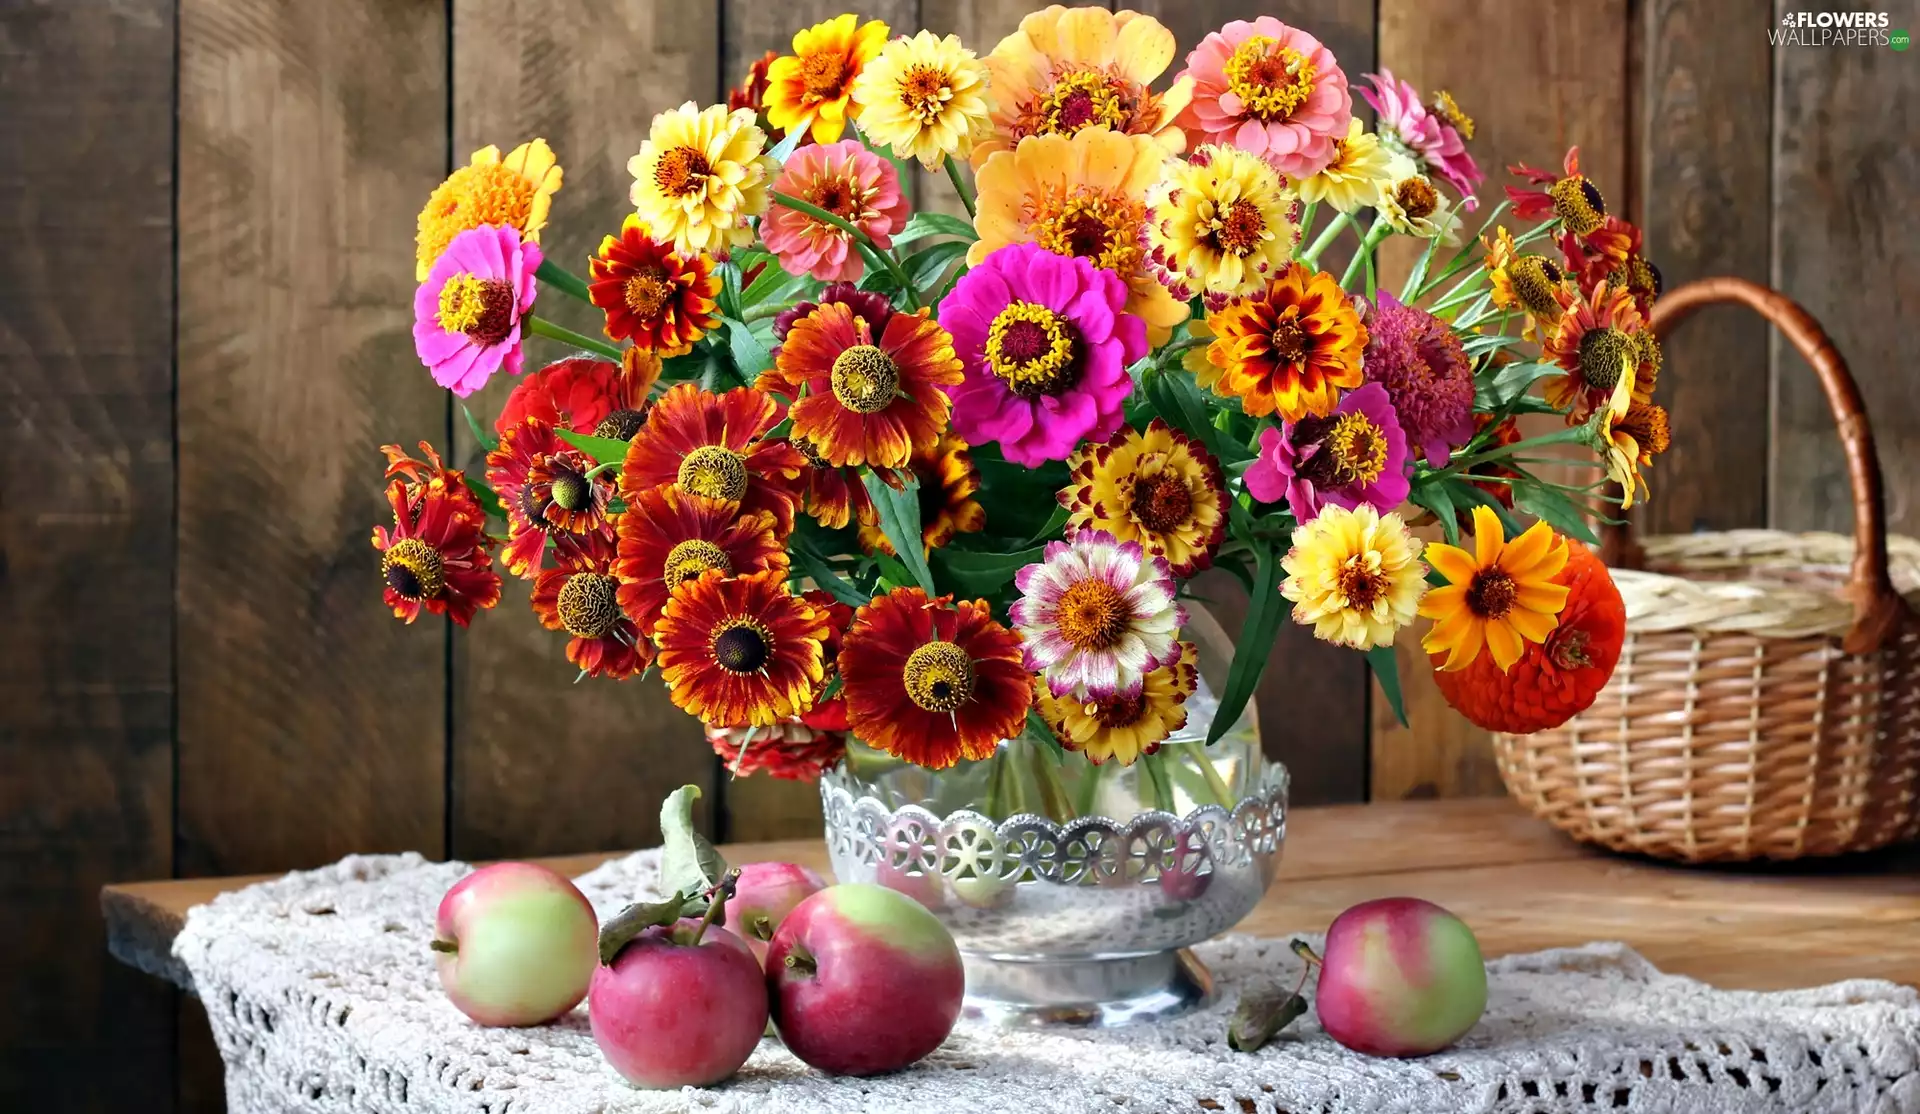 bouquet, Helenium, apples, Zinnias, Flowers, basket, composition